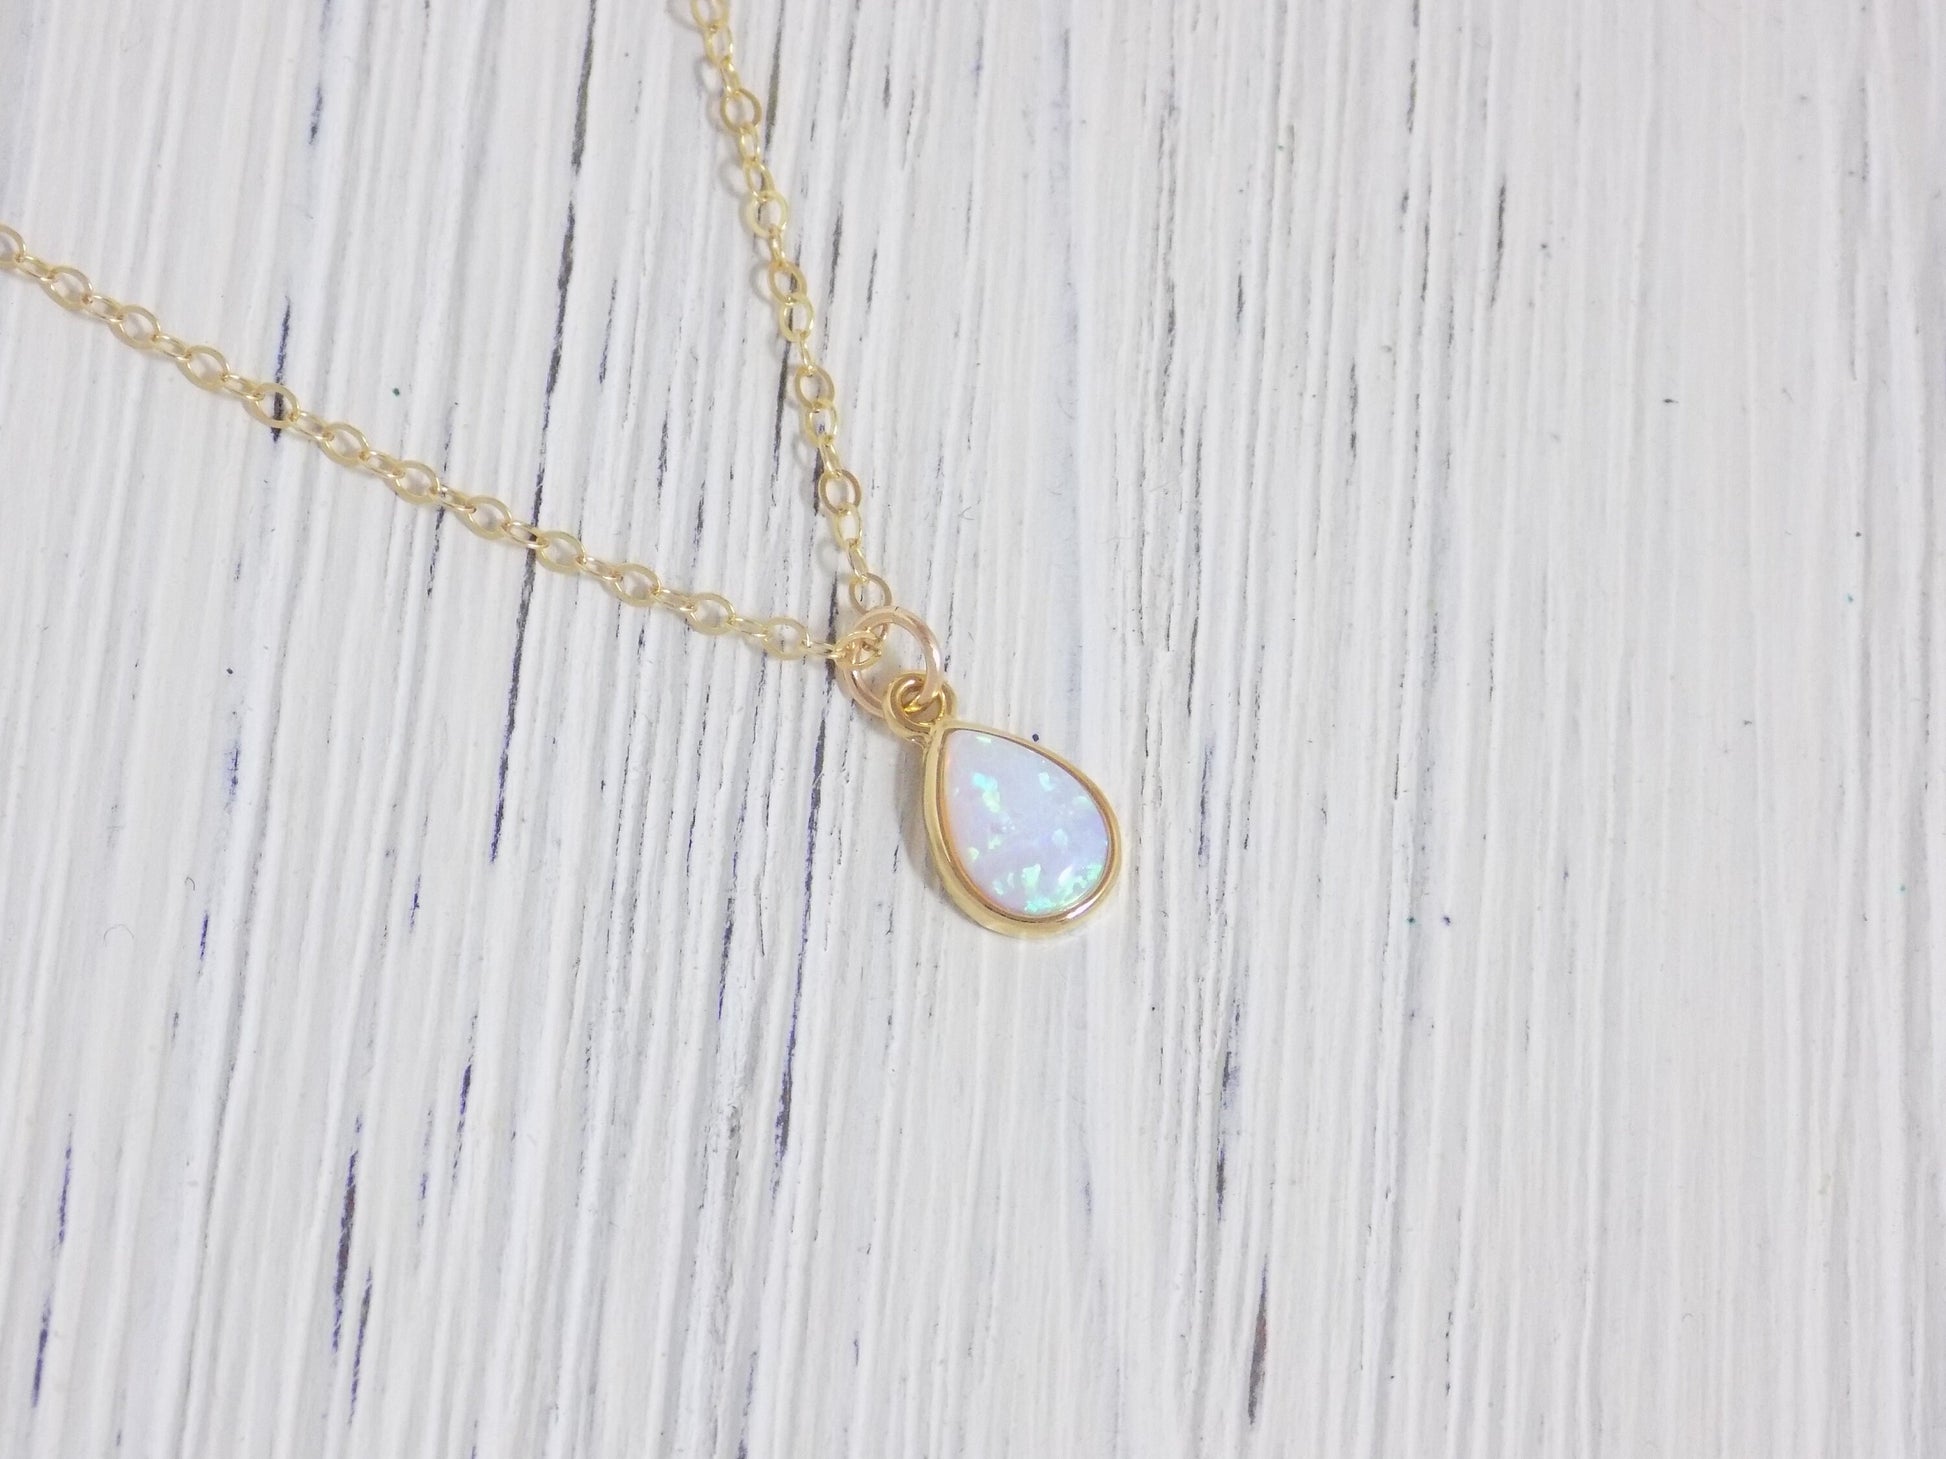 Tiny Opal Necklace Gold, Oval Opal Necklace, Light Blue Opal Necklace, Tiny Layering, October Birthday Gift, L1-02